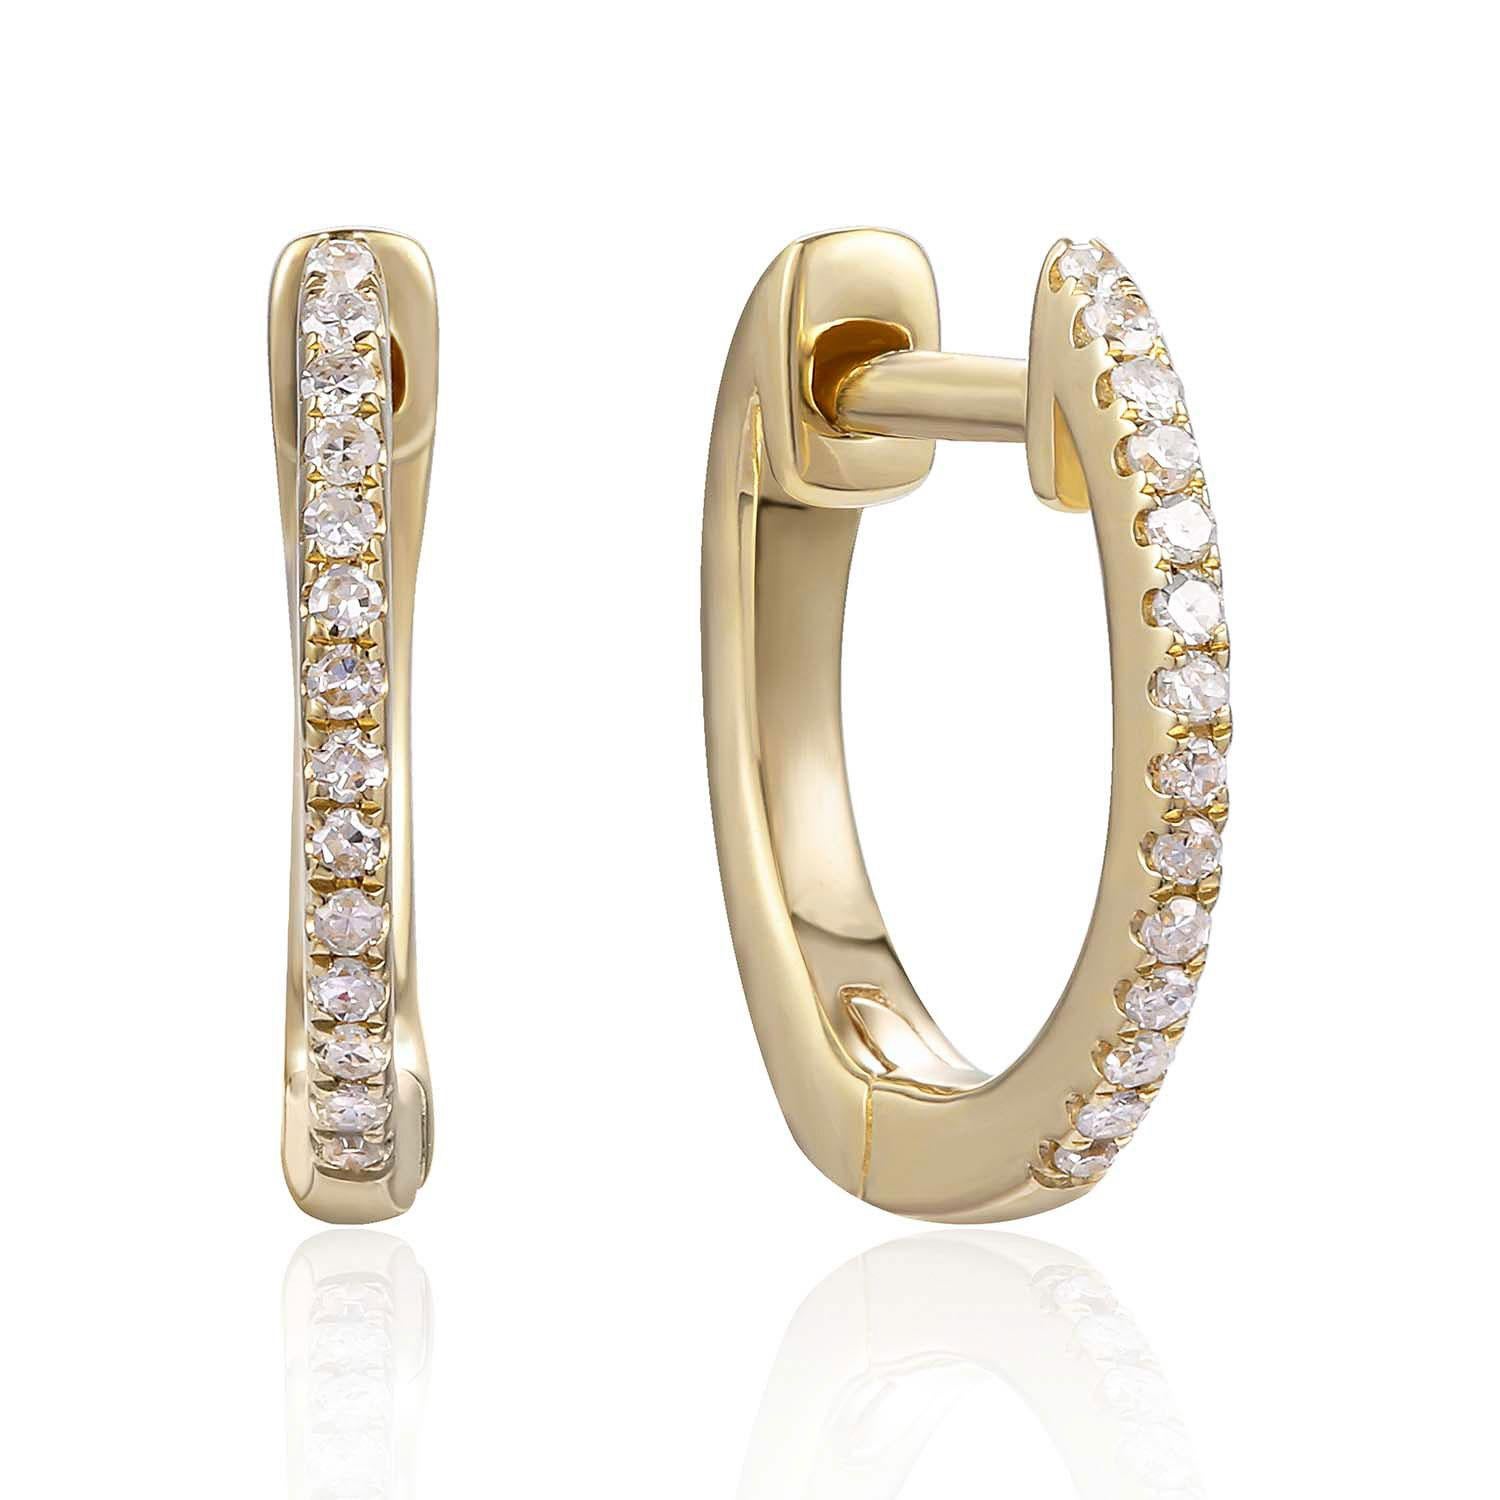 diamant-Ohrringe aus 14K Gelbgold mit 0,06 Karat Diamanten

Unterstreichen Sie Ihren Look mit diesen scharfen Diamant-Ohrringen aus 14K Gelbgold. Hochwertige Diamanten. Diese Ohrringe unterstreichen Ihren exquisiten Look zu jedem Anlass.

. ist seit